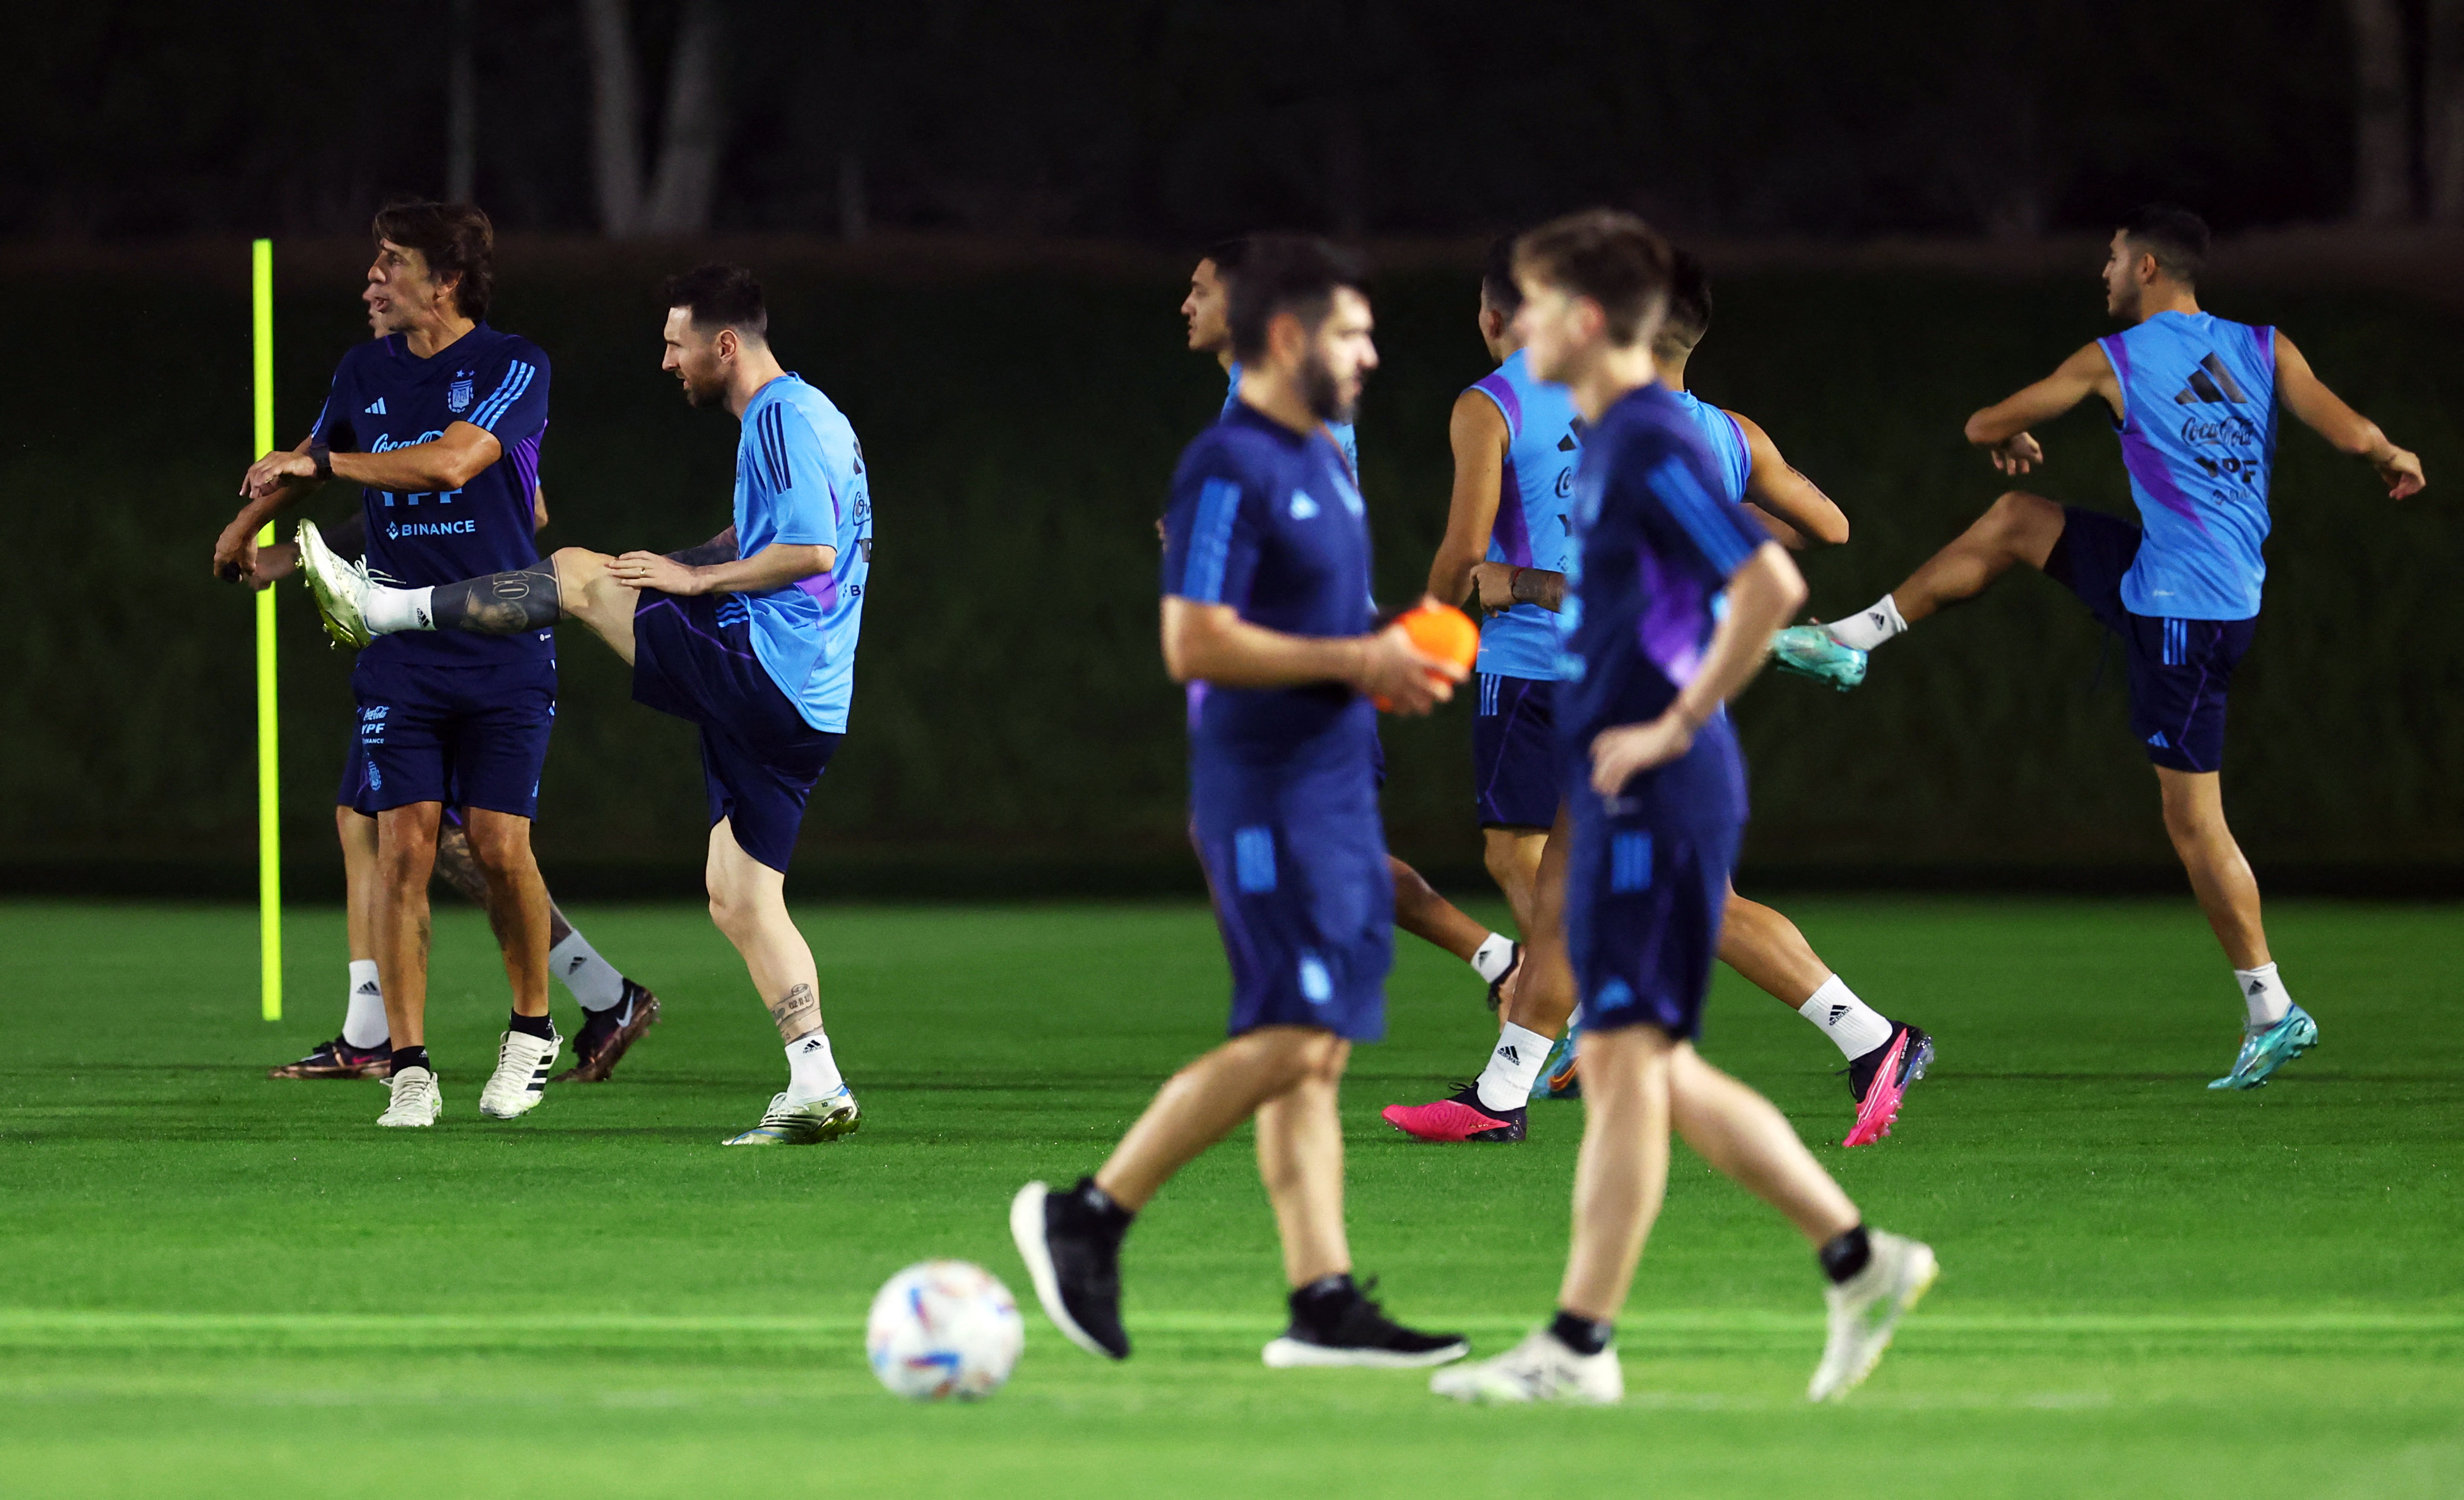 El entrenamiento de la selección argentina: Di María trabajó con normalidad y “el equipo de las pecheras” que piensa Scaloni para enfrentar a Países Bajos  